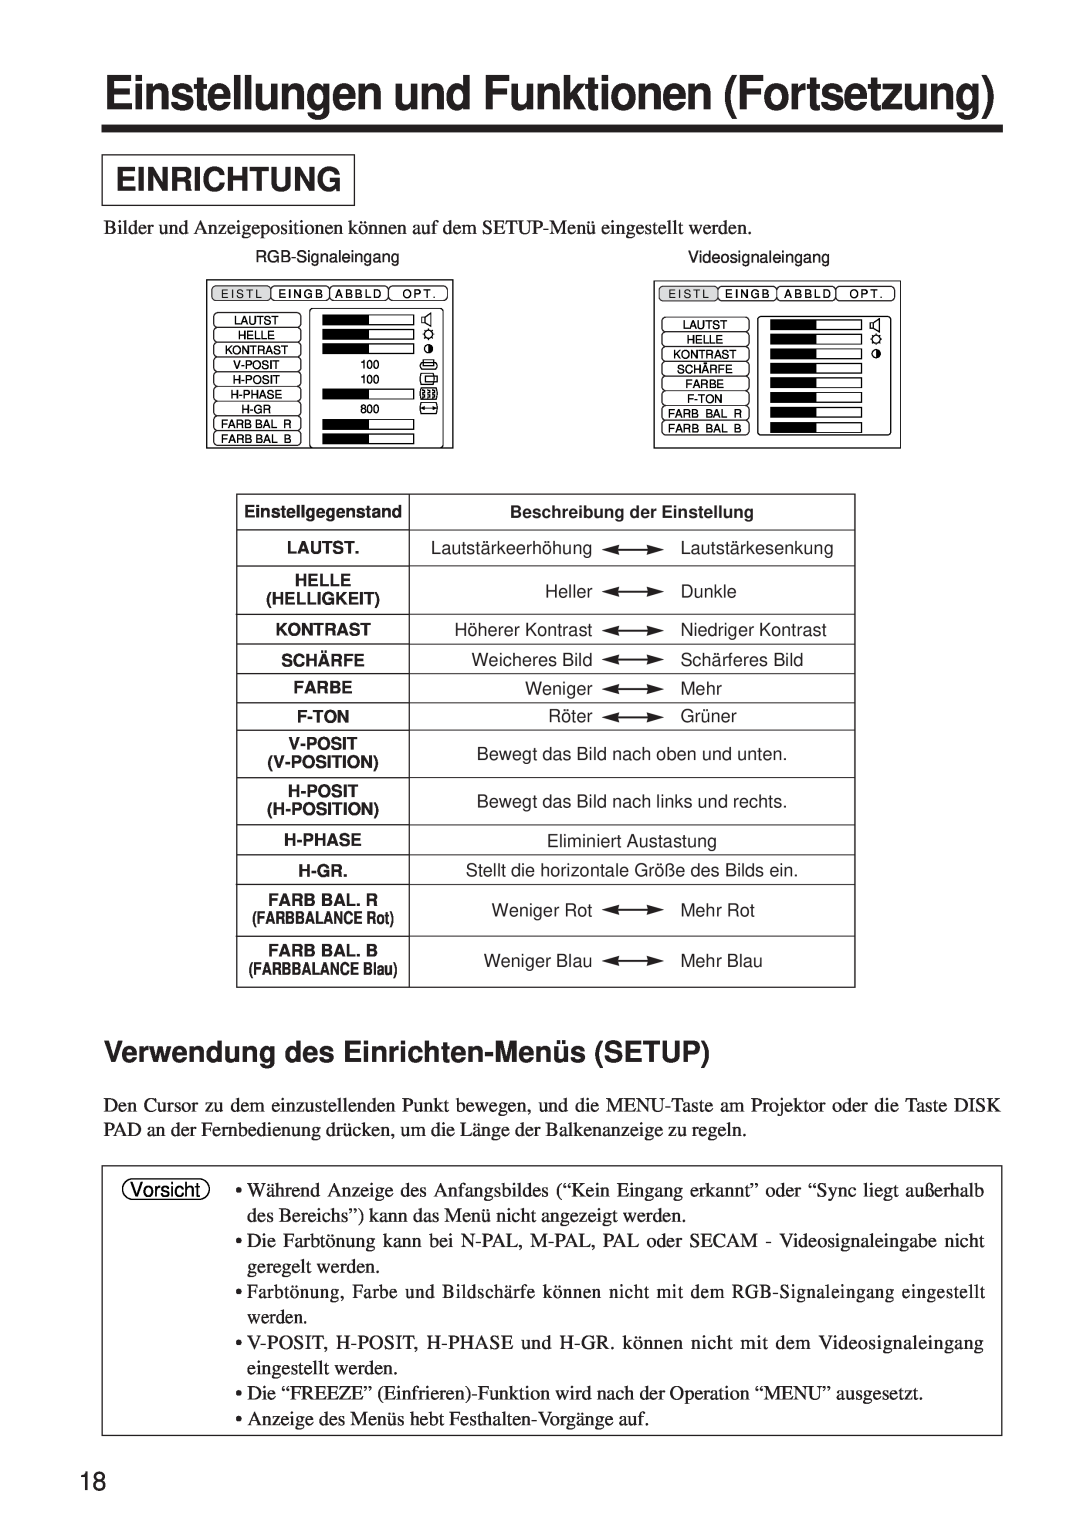 BOXLIGHT MP-650i user manual Einstellungen und Funktionen Fortsetzung, Einrichtung, Verwendung des Einrichten-Menüs SETUP 